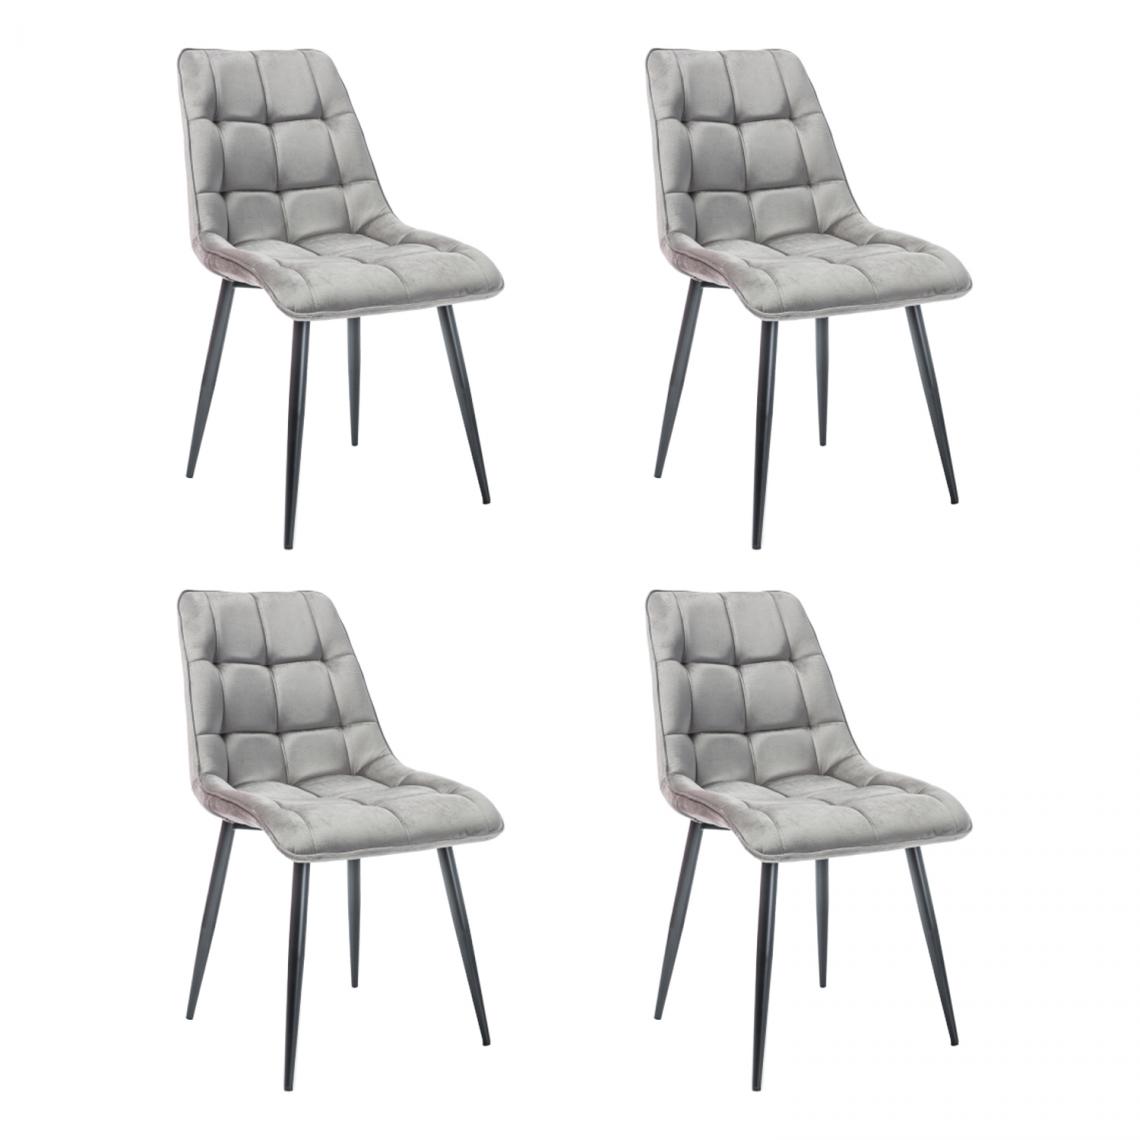 Hucoco - CHIM - Lot de 4 chaises matelassées salle à manger - 89x51x44 cm - Tissu velouté - Pieds en métal - Gris - Chaises